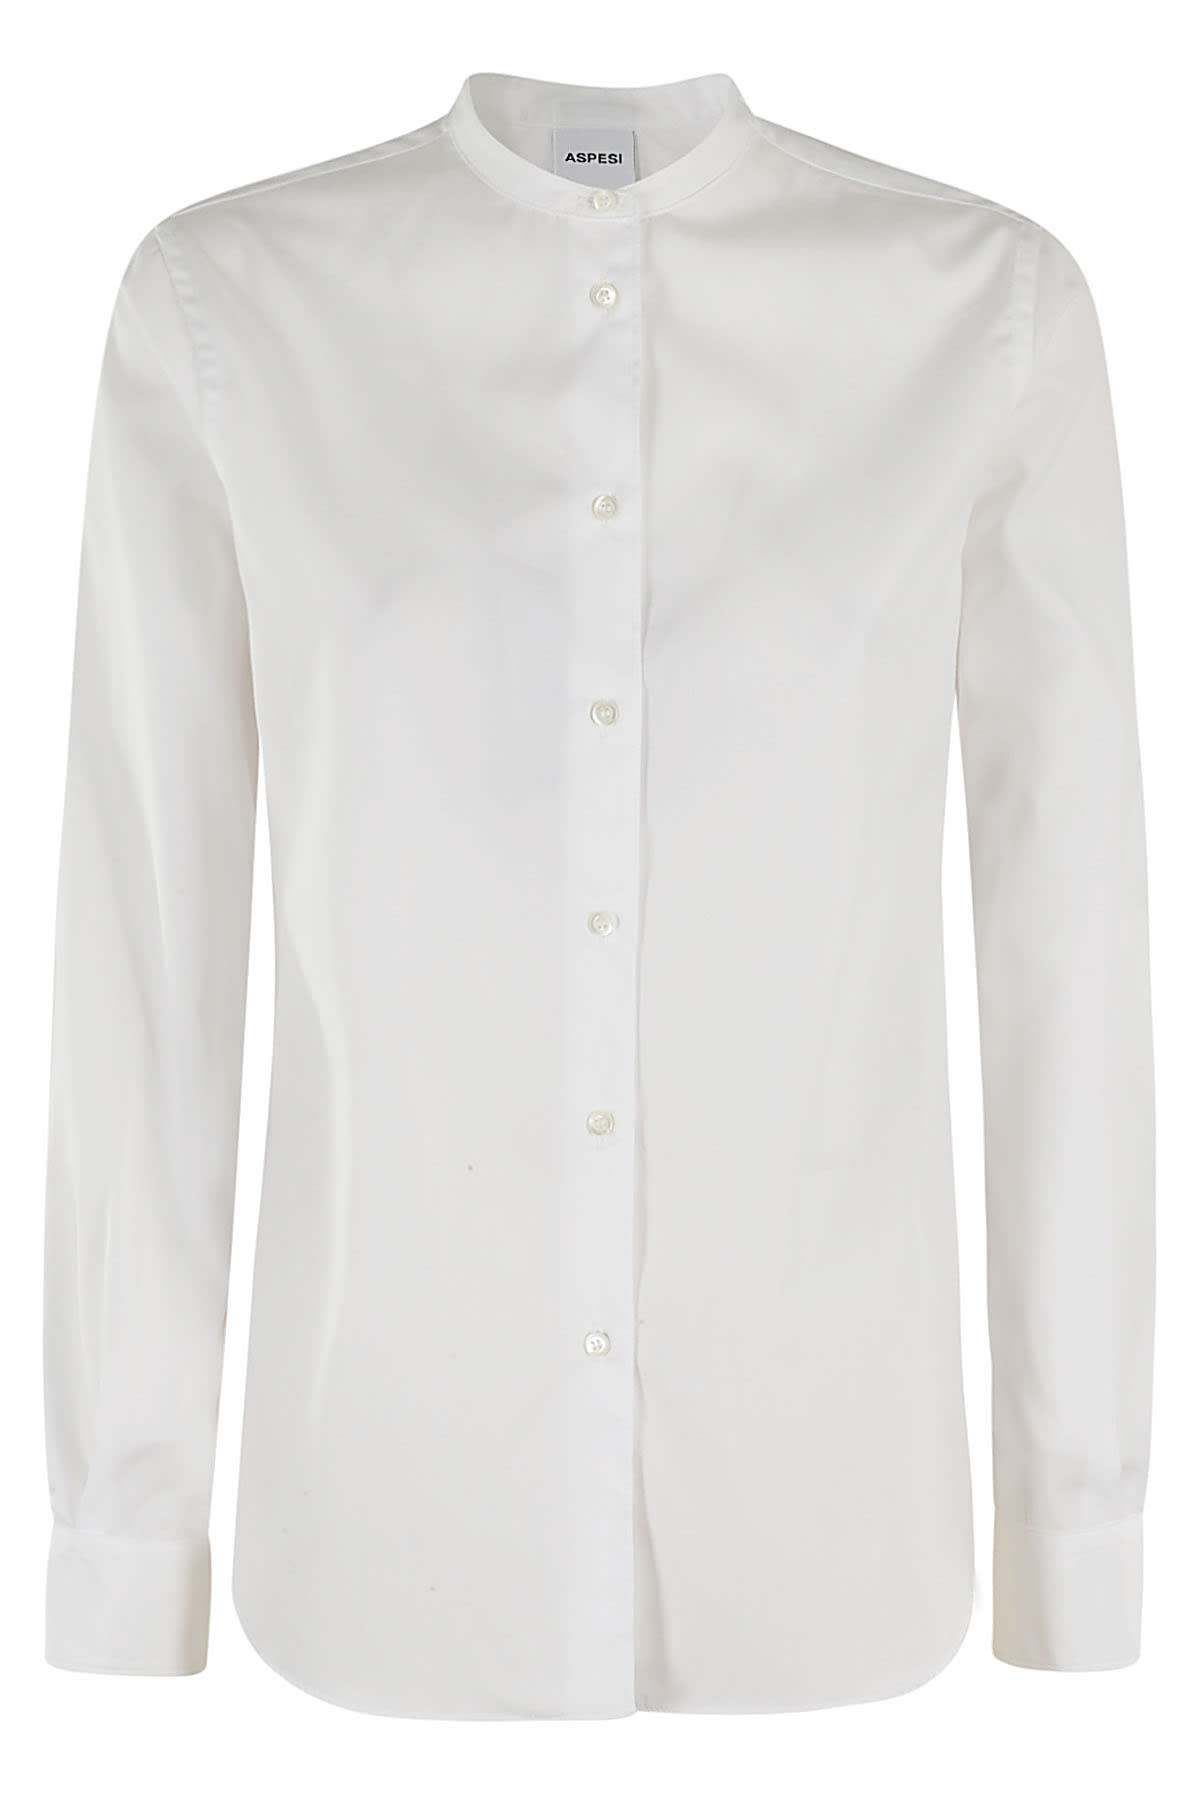 Aspesi Camicia Mod 5416 In Bianco